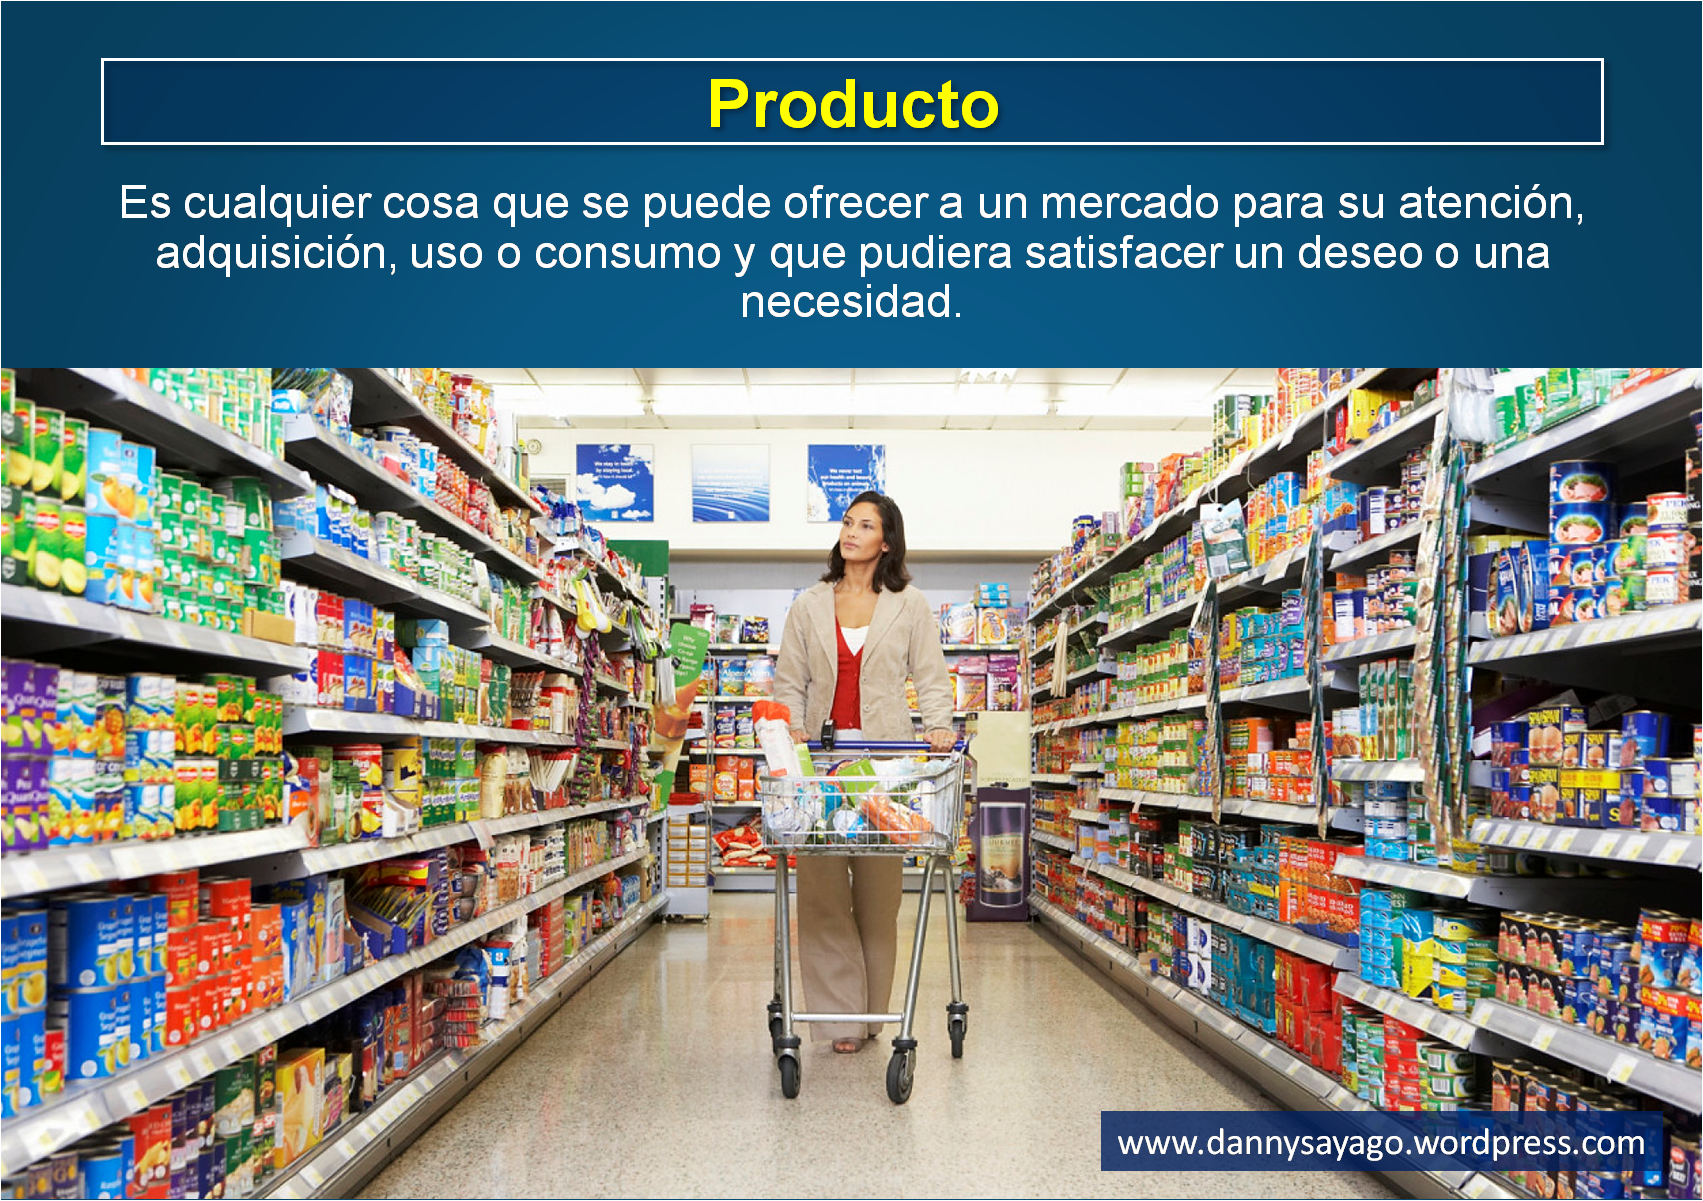 Definicion de producto Danny Sayago Marketing Educativo producto servicio experiencia